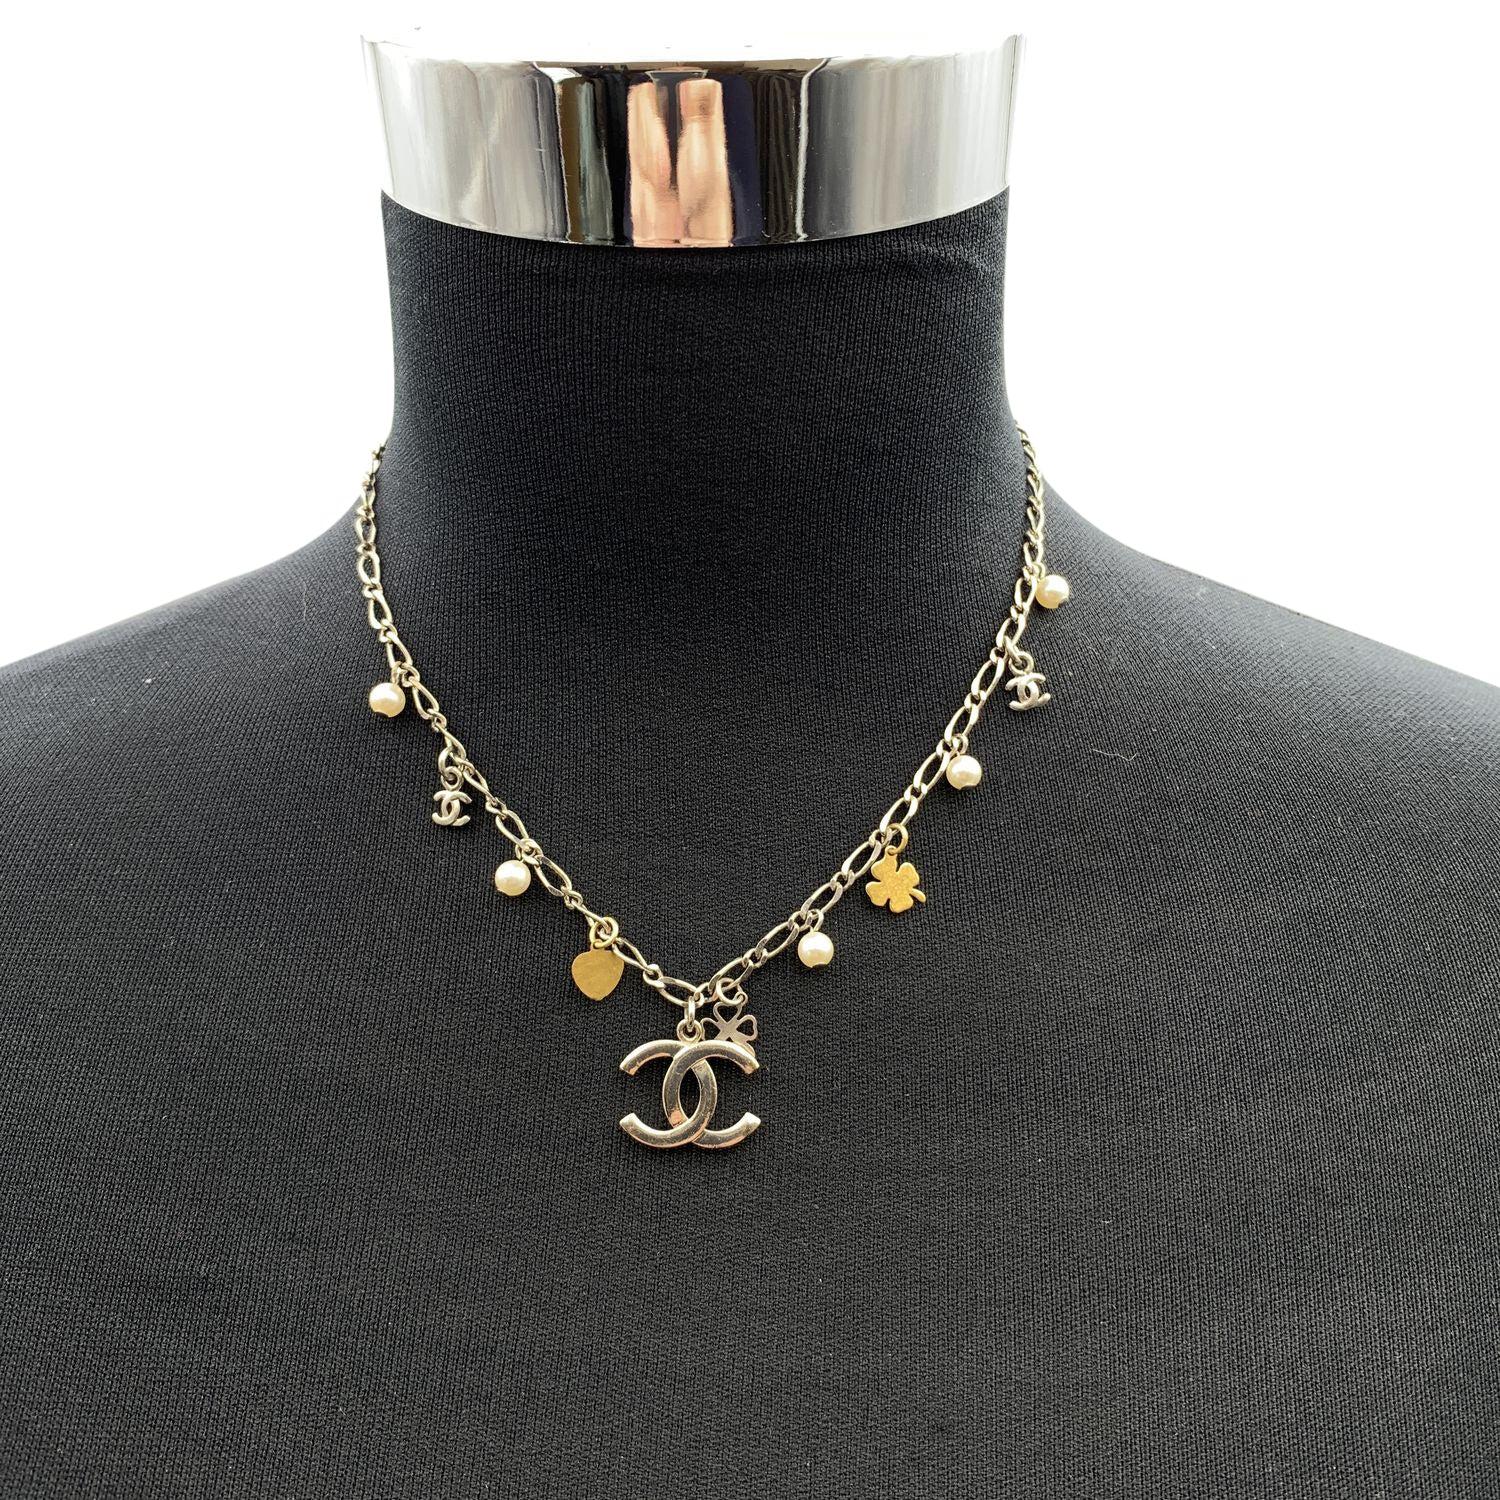 Joli collier Chanel avec de petits charmes. Il comporte de petits trèfles dorés, de petites perles et des logos CC. Fermeture en homard. Longueur totale de la chaîne : 16.5 inches - 41.9 cm. Marque ovale 